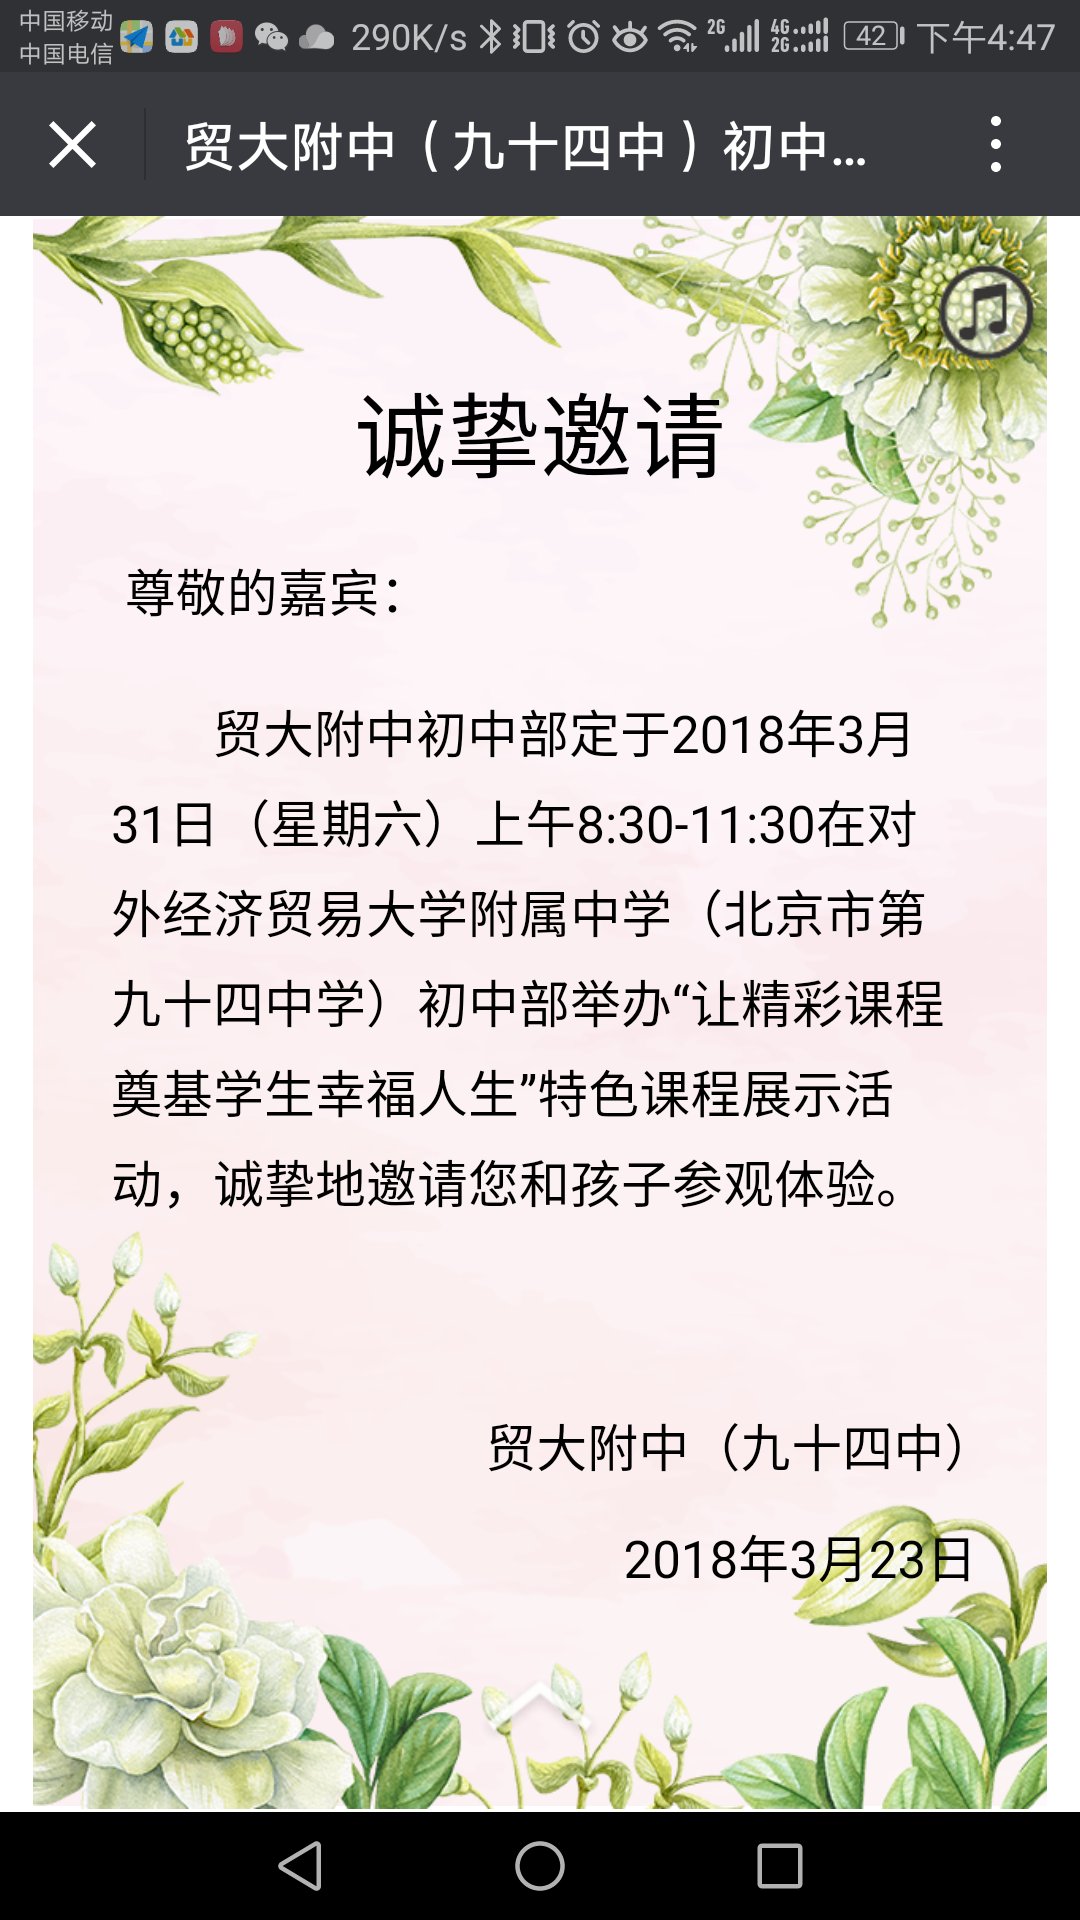 2018北京小升初对外经贸附属中学3月31日开放日1